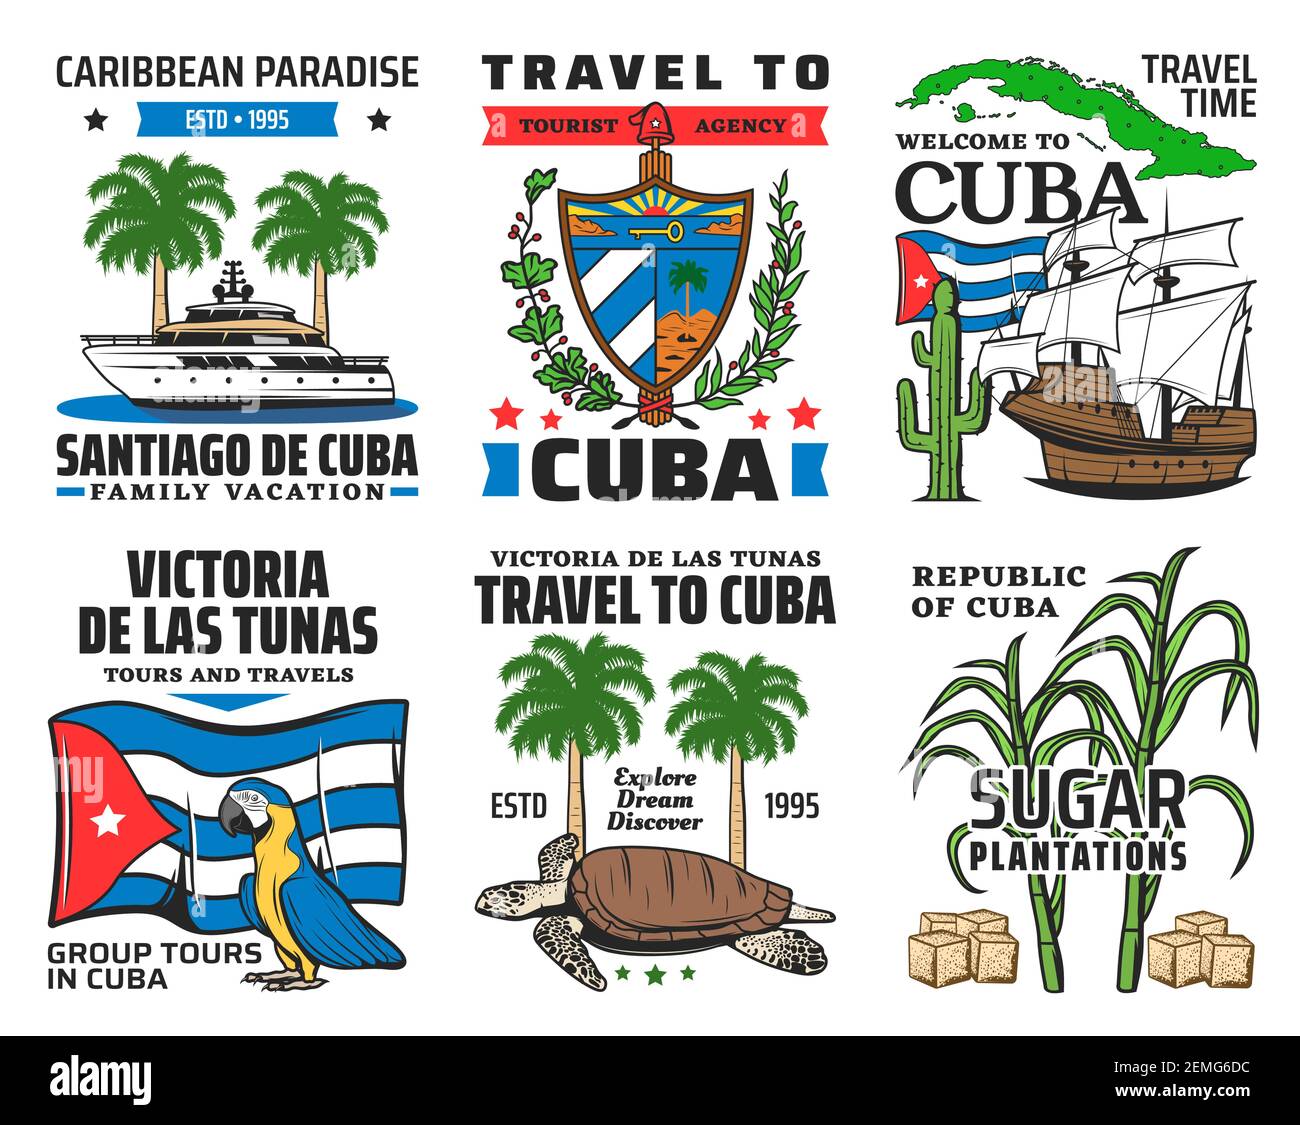 Cuba voyage touristique, caraïbes paradis famille vacances icônes. Yacht et palmier royal, armoiries cubaines et drapeau national, perroquet de macaw, tortue de mer, s Illustration de Vecteur